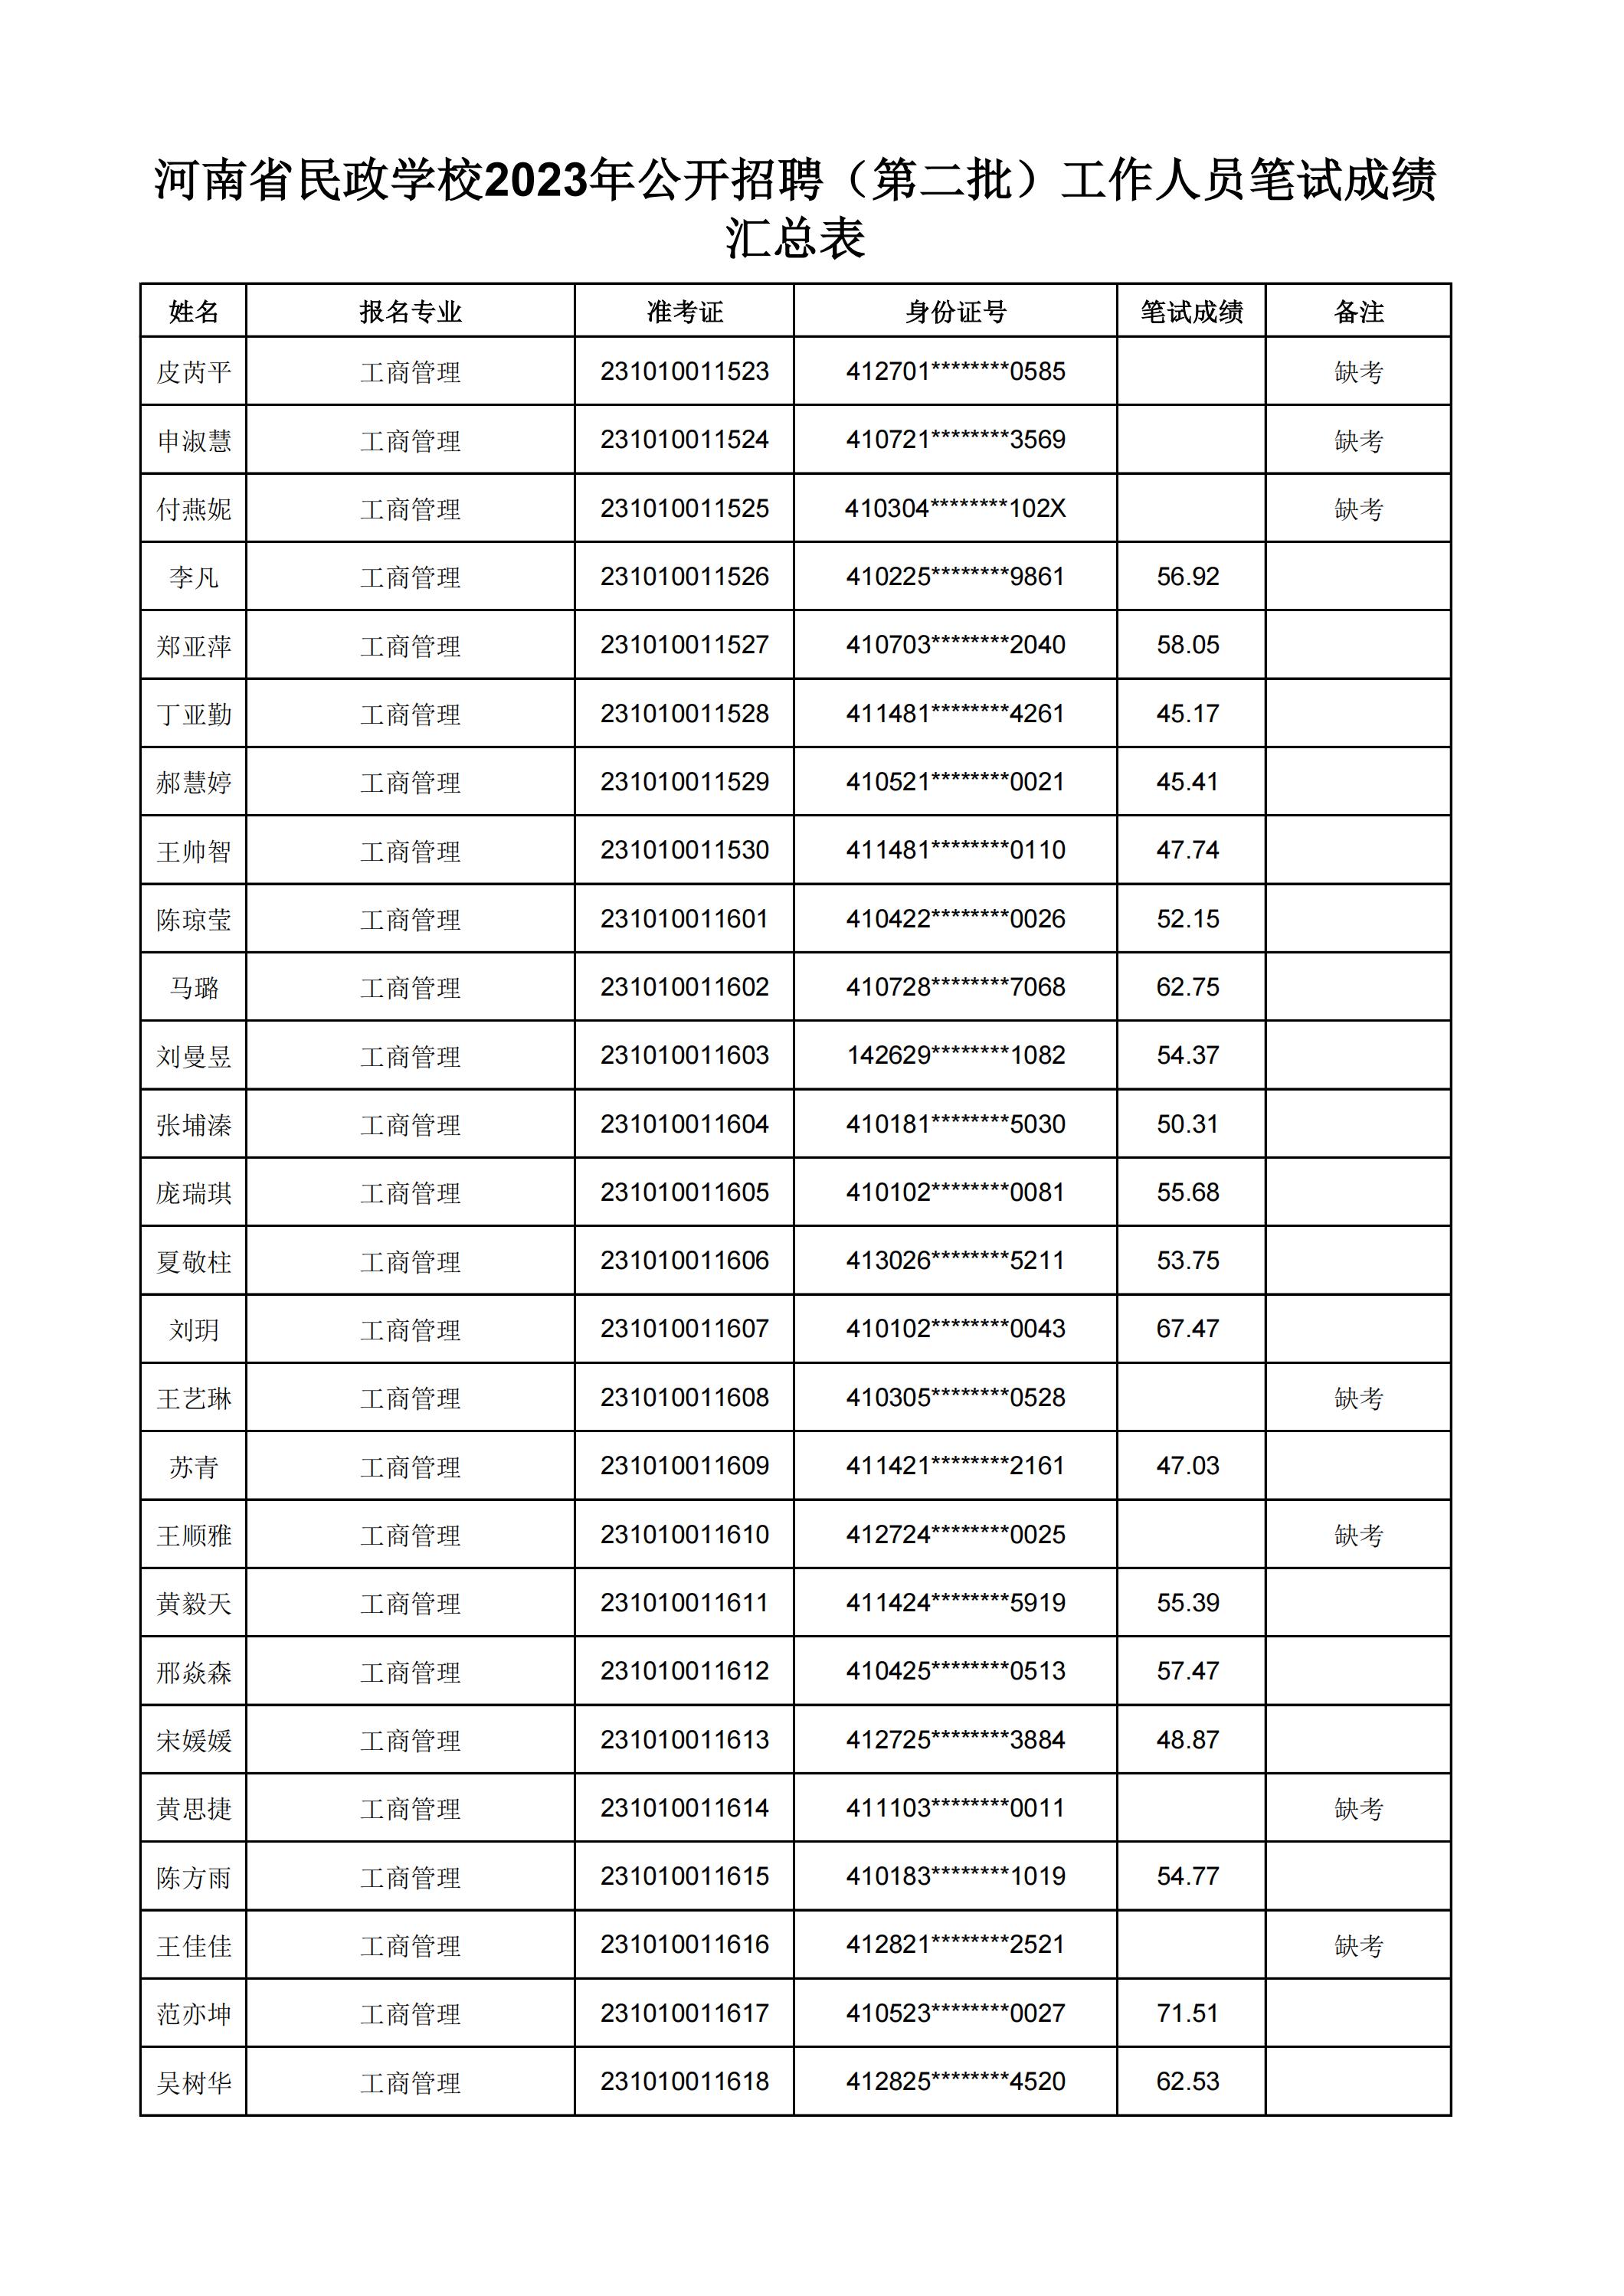 河南省民政学校2023年公开招聘（第二批）工作人员笔试成绩汇总表(2)_17.jpg